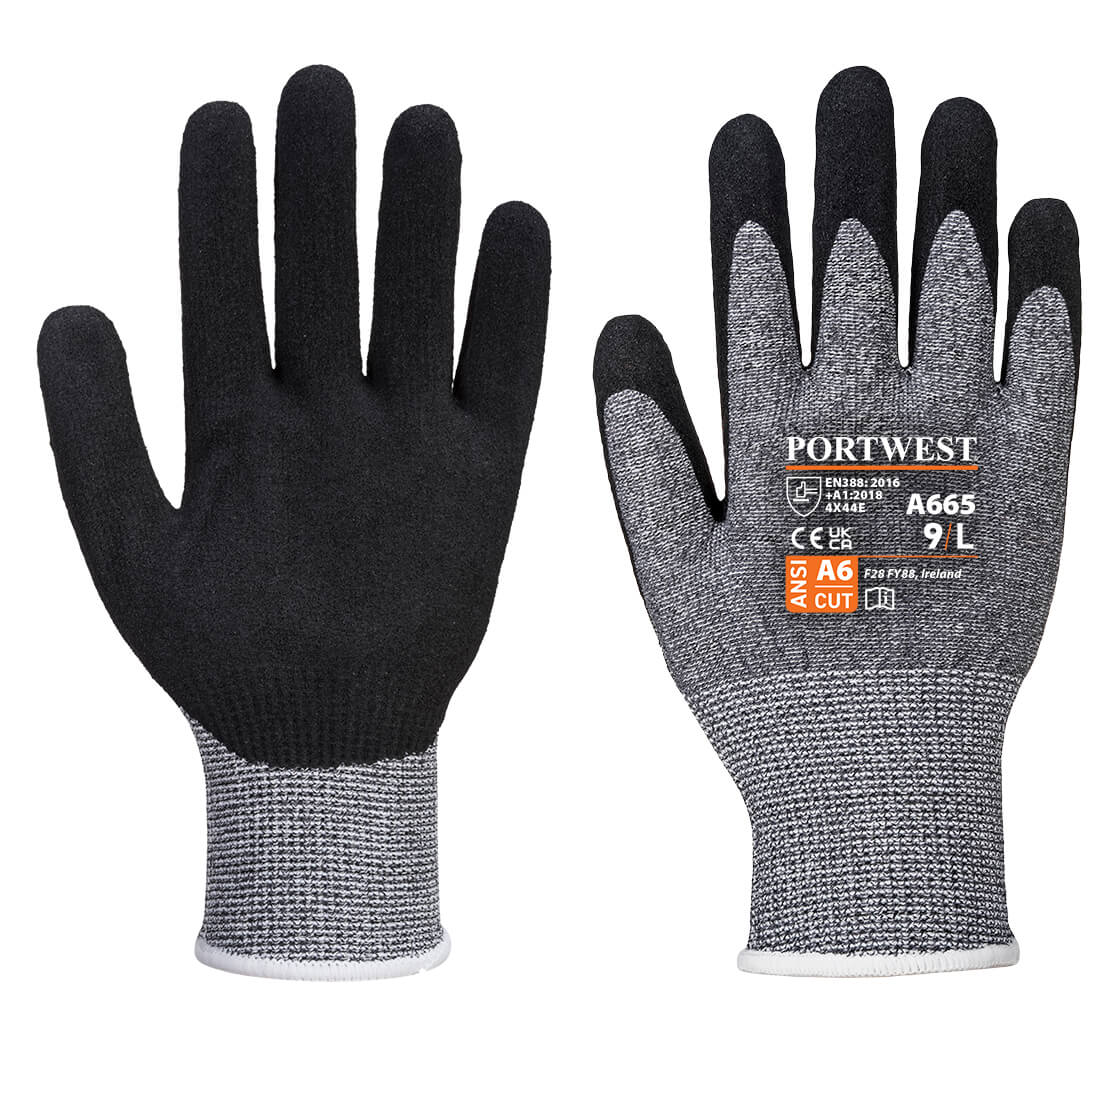 VHR Advanced Cut Glove  (A665)